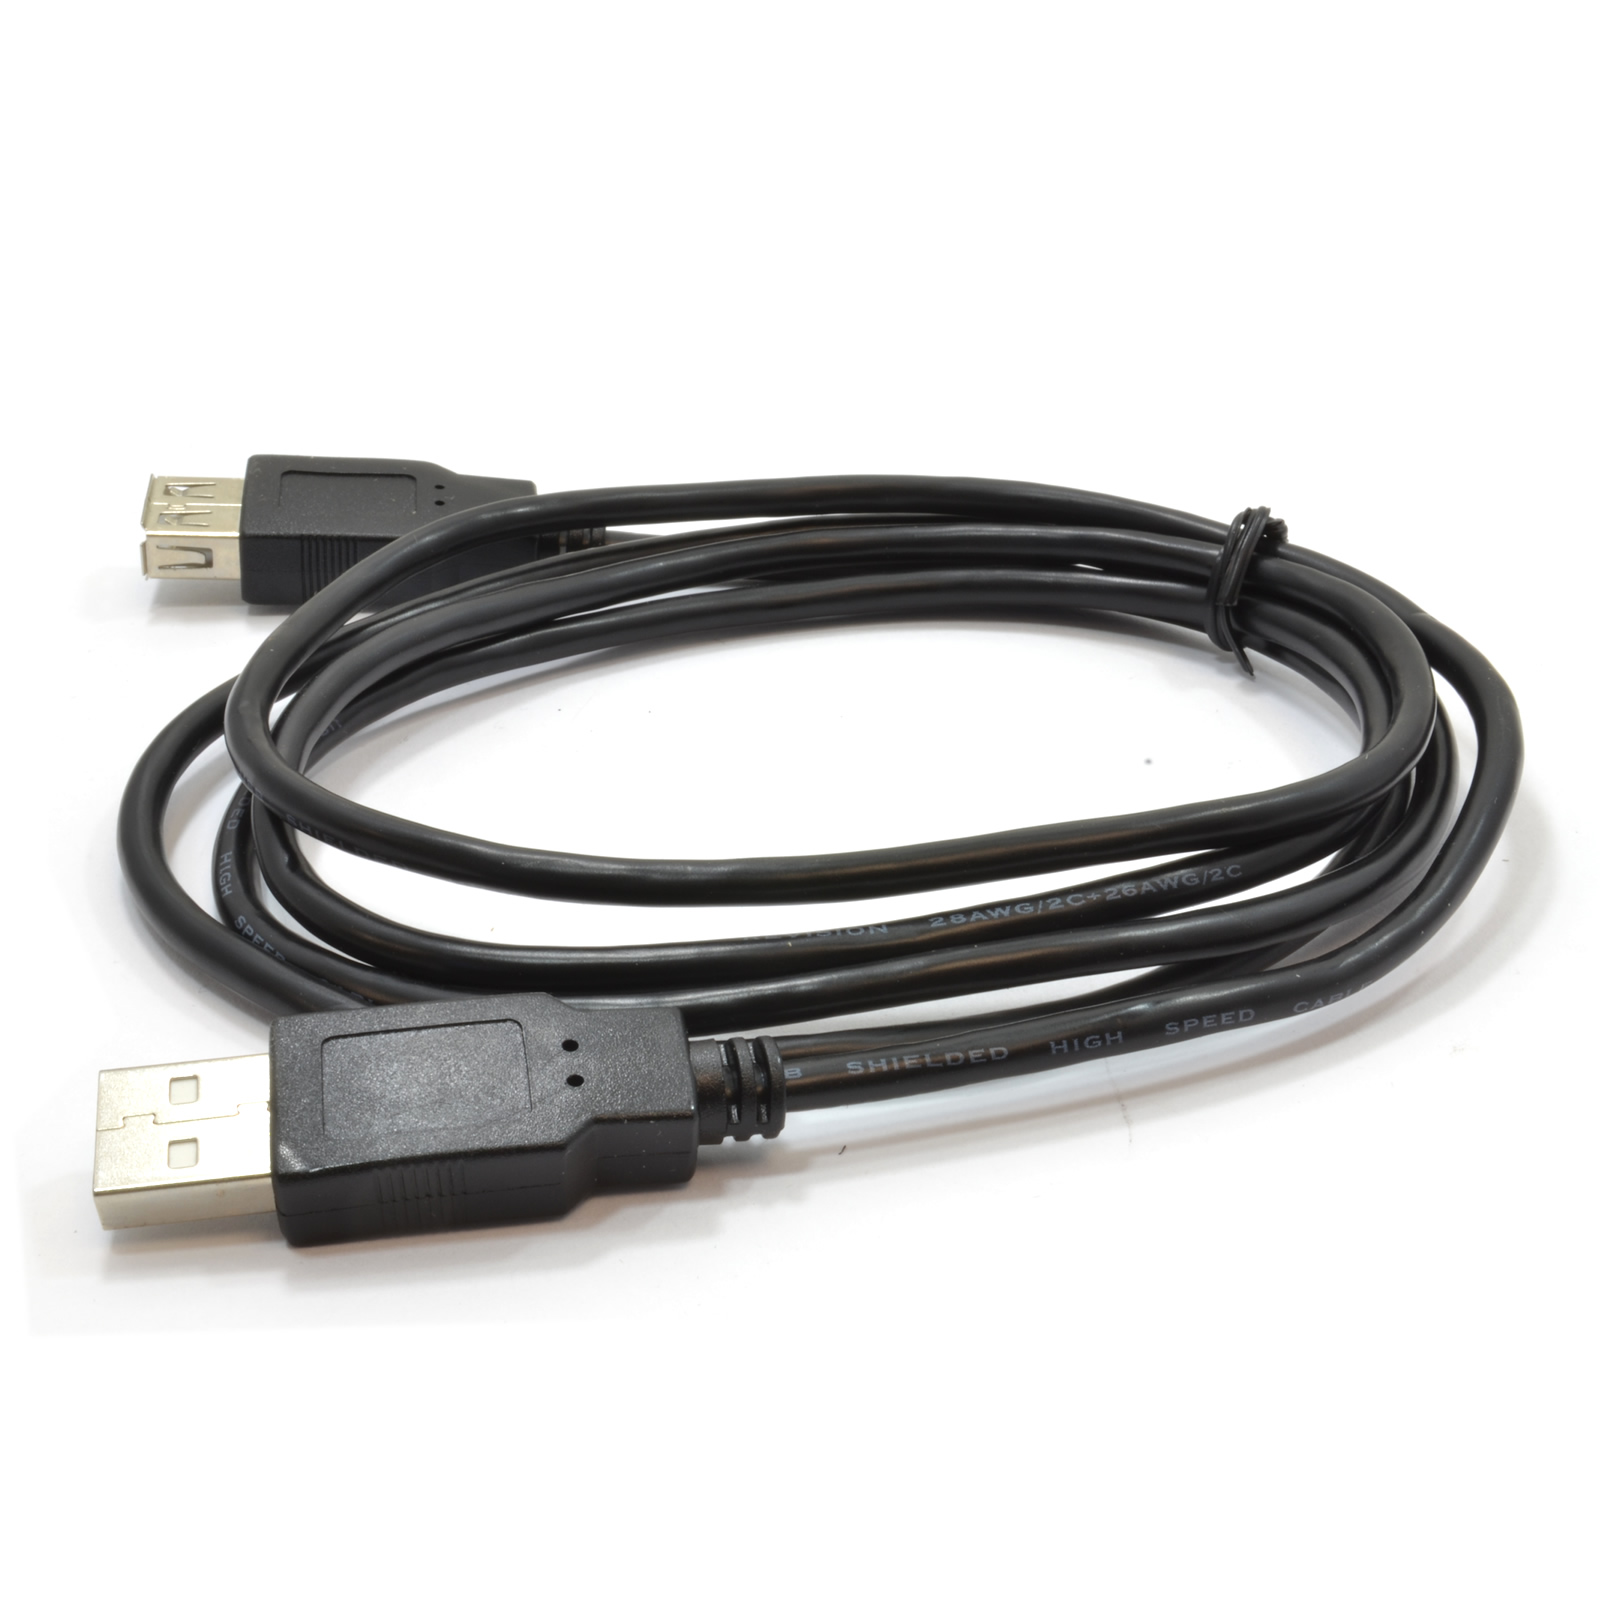 کابل افزایش طول USB کی-نت به طول 3 متر